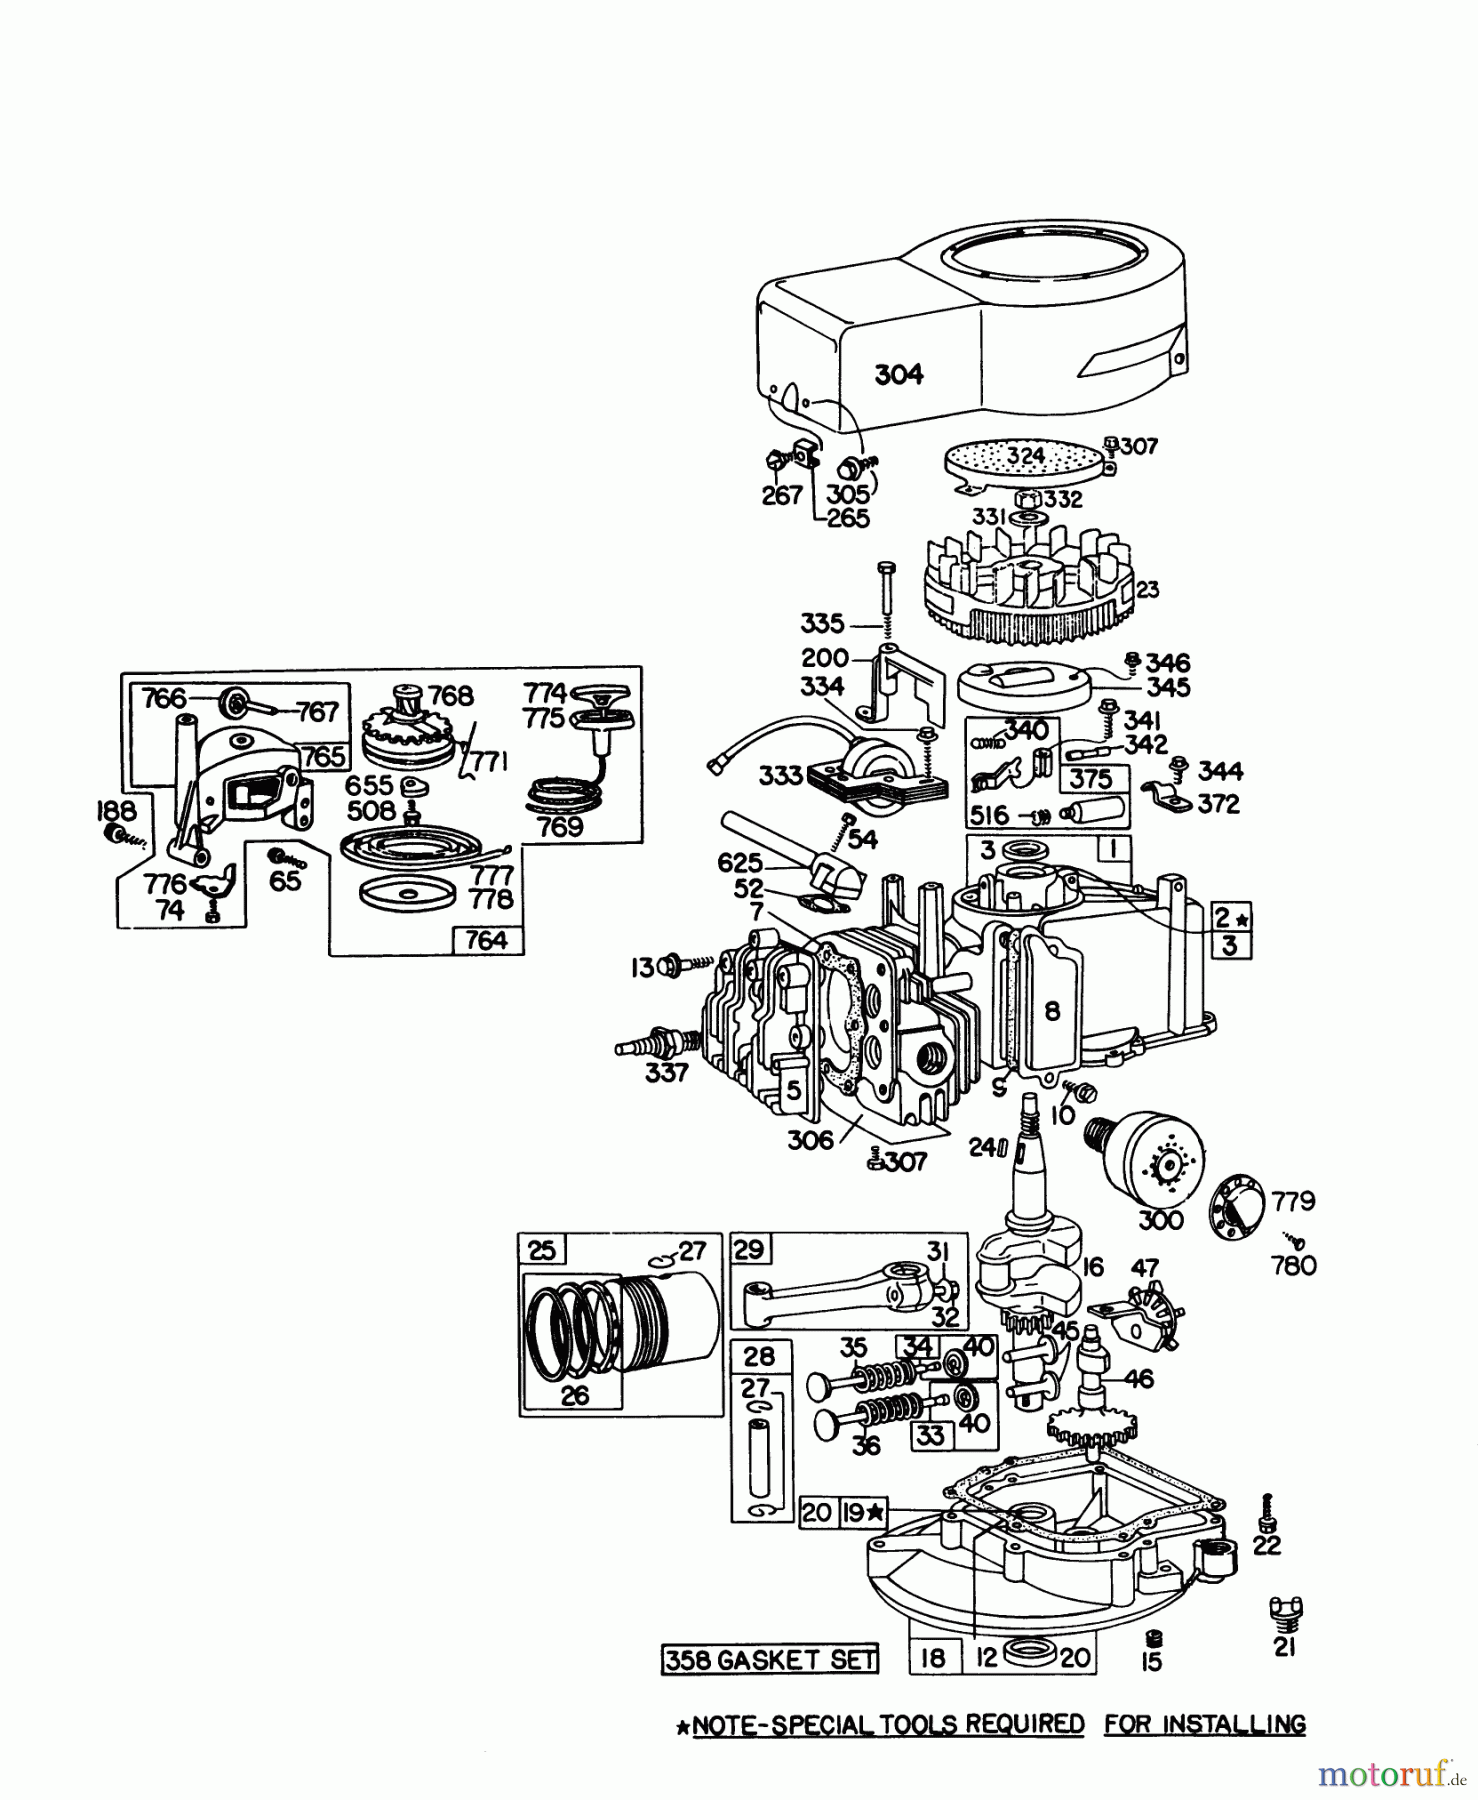  Toro Neu Mowers, Walk-Behind Seite 1 16155 - Toro Whirlwind II Lawnmower, 1978 (8000001-8999999) ENGINE BRIGGS & STRATTON MODEL 92908-1931-01 FOR 21